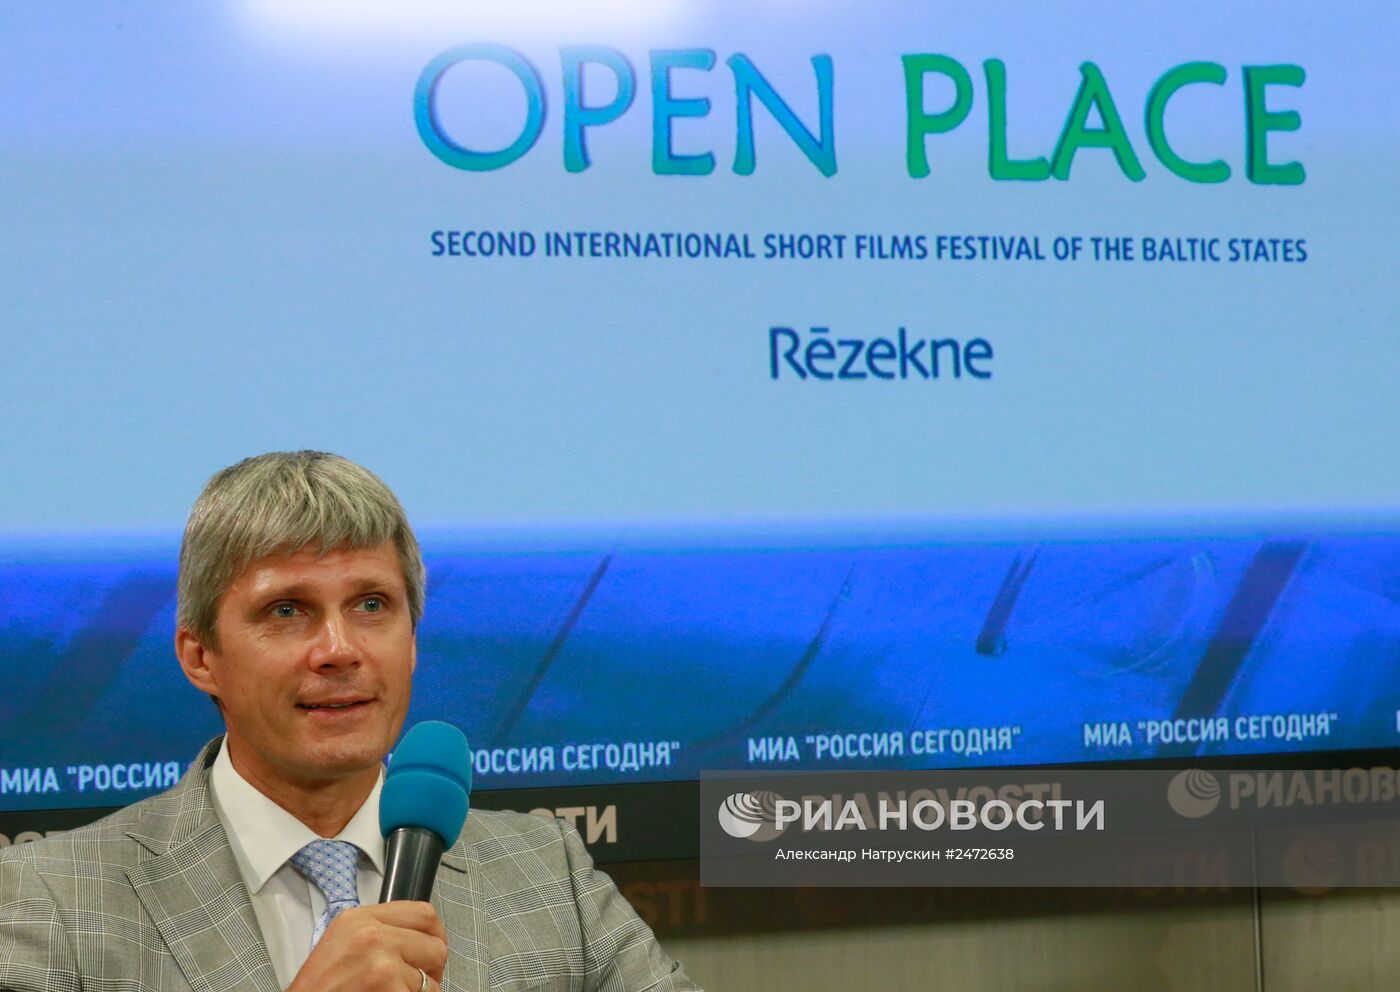 Пресс-конференция организаторов II Международного фестиваля короткометражных фильмов стран Балтийского моря Open Place